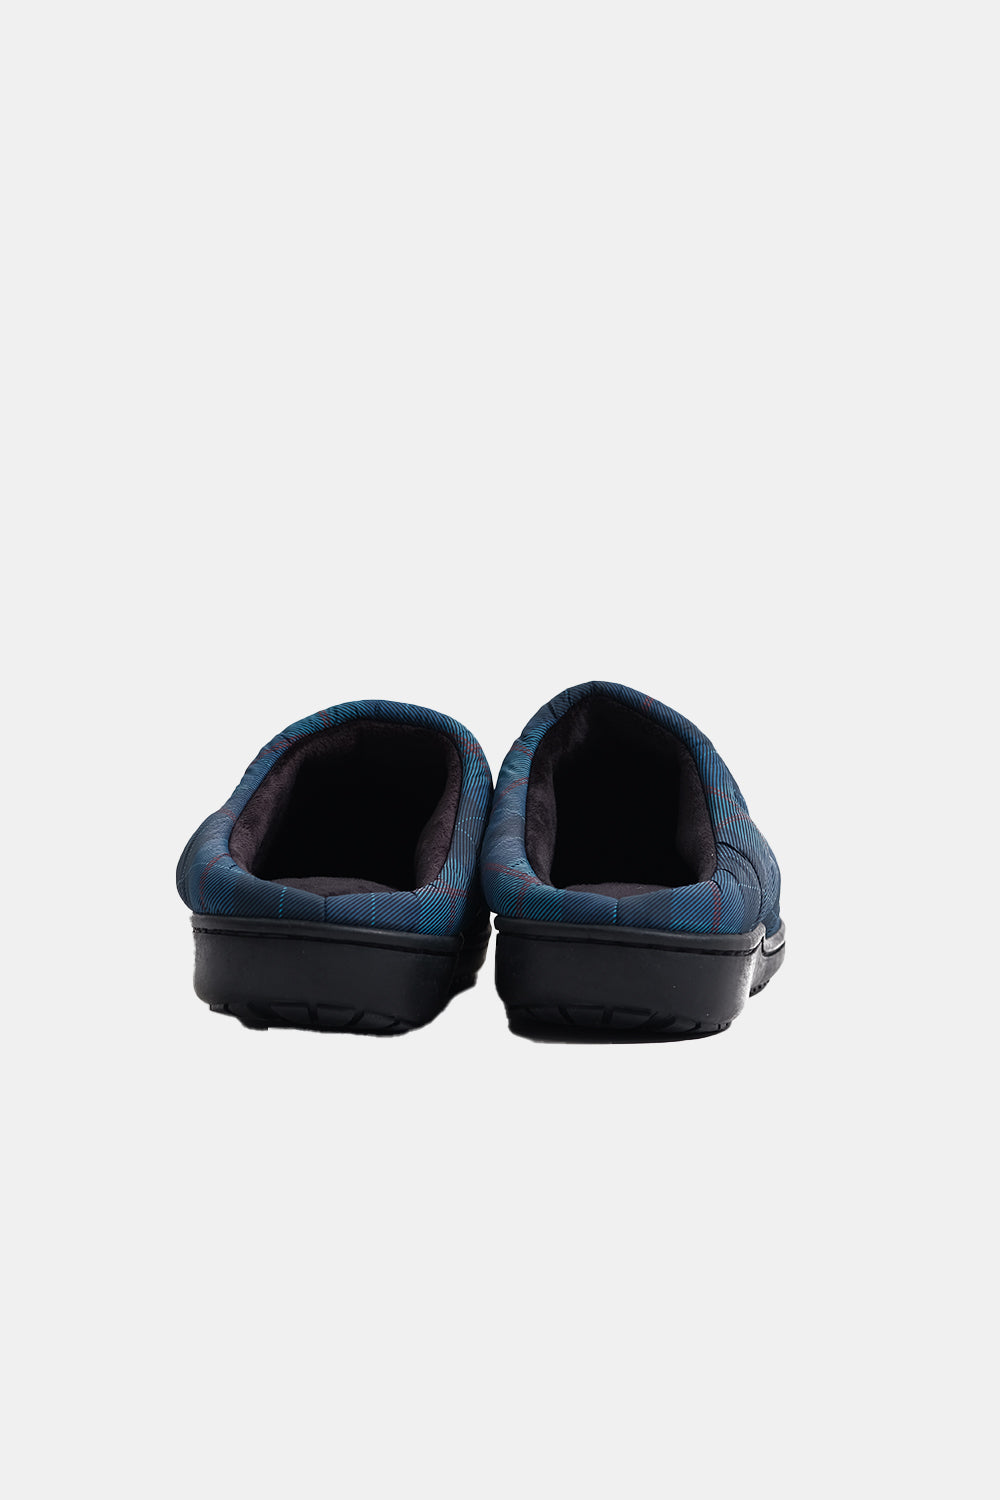 SUBU Indoor Outdoor Slippers (Tartan) | Number Six